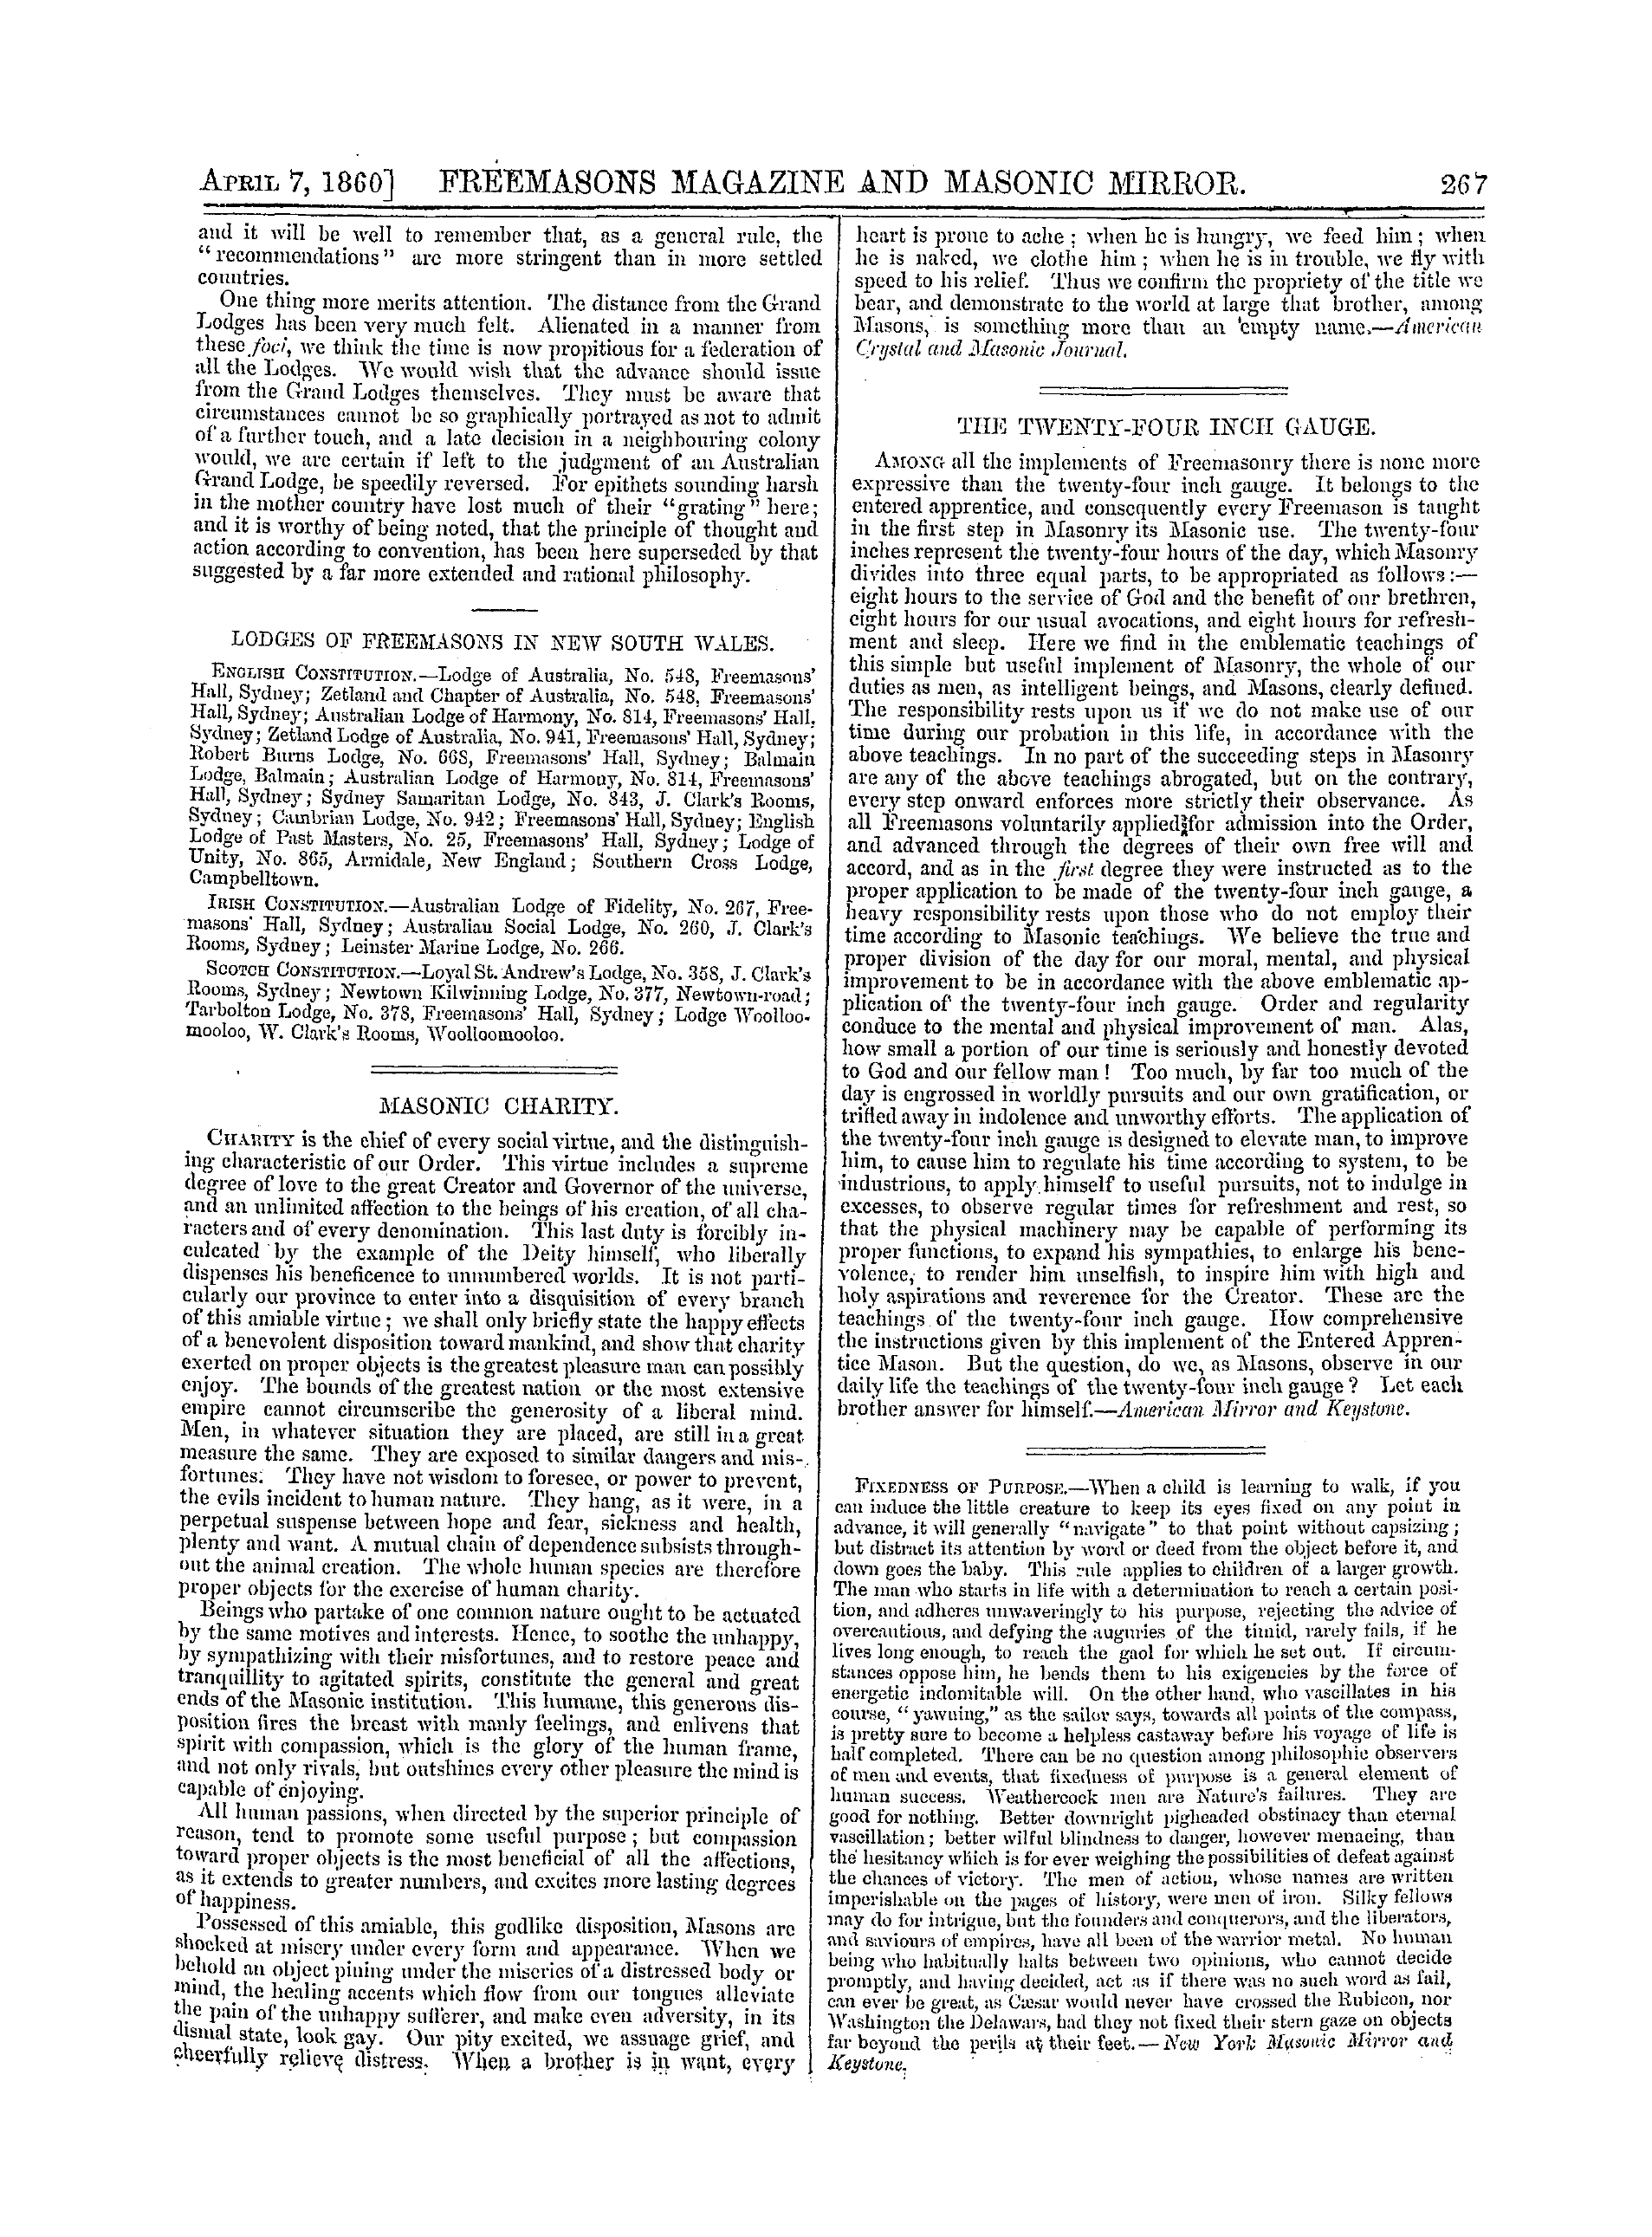 The Freemasons' Monthly Magazine: 1860-04-07: 7